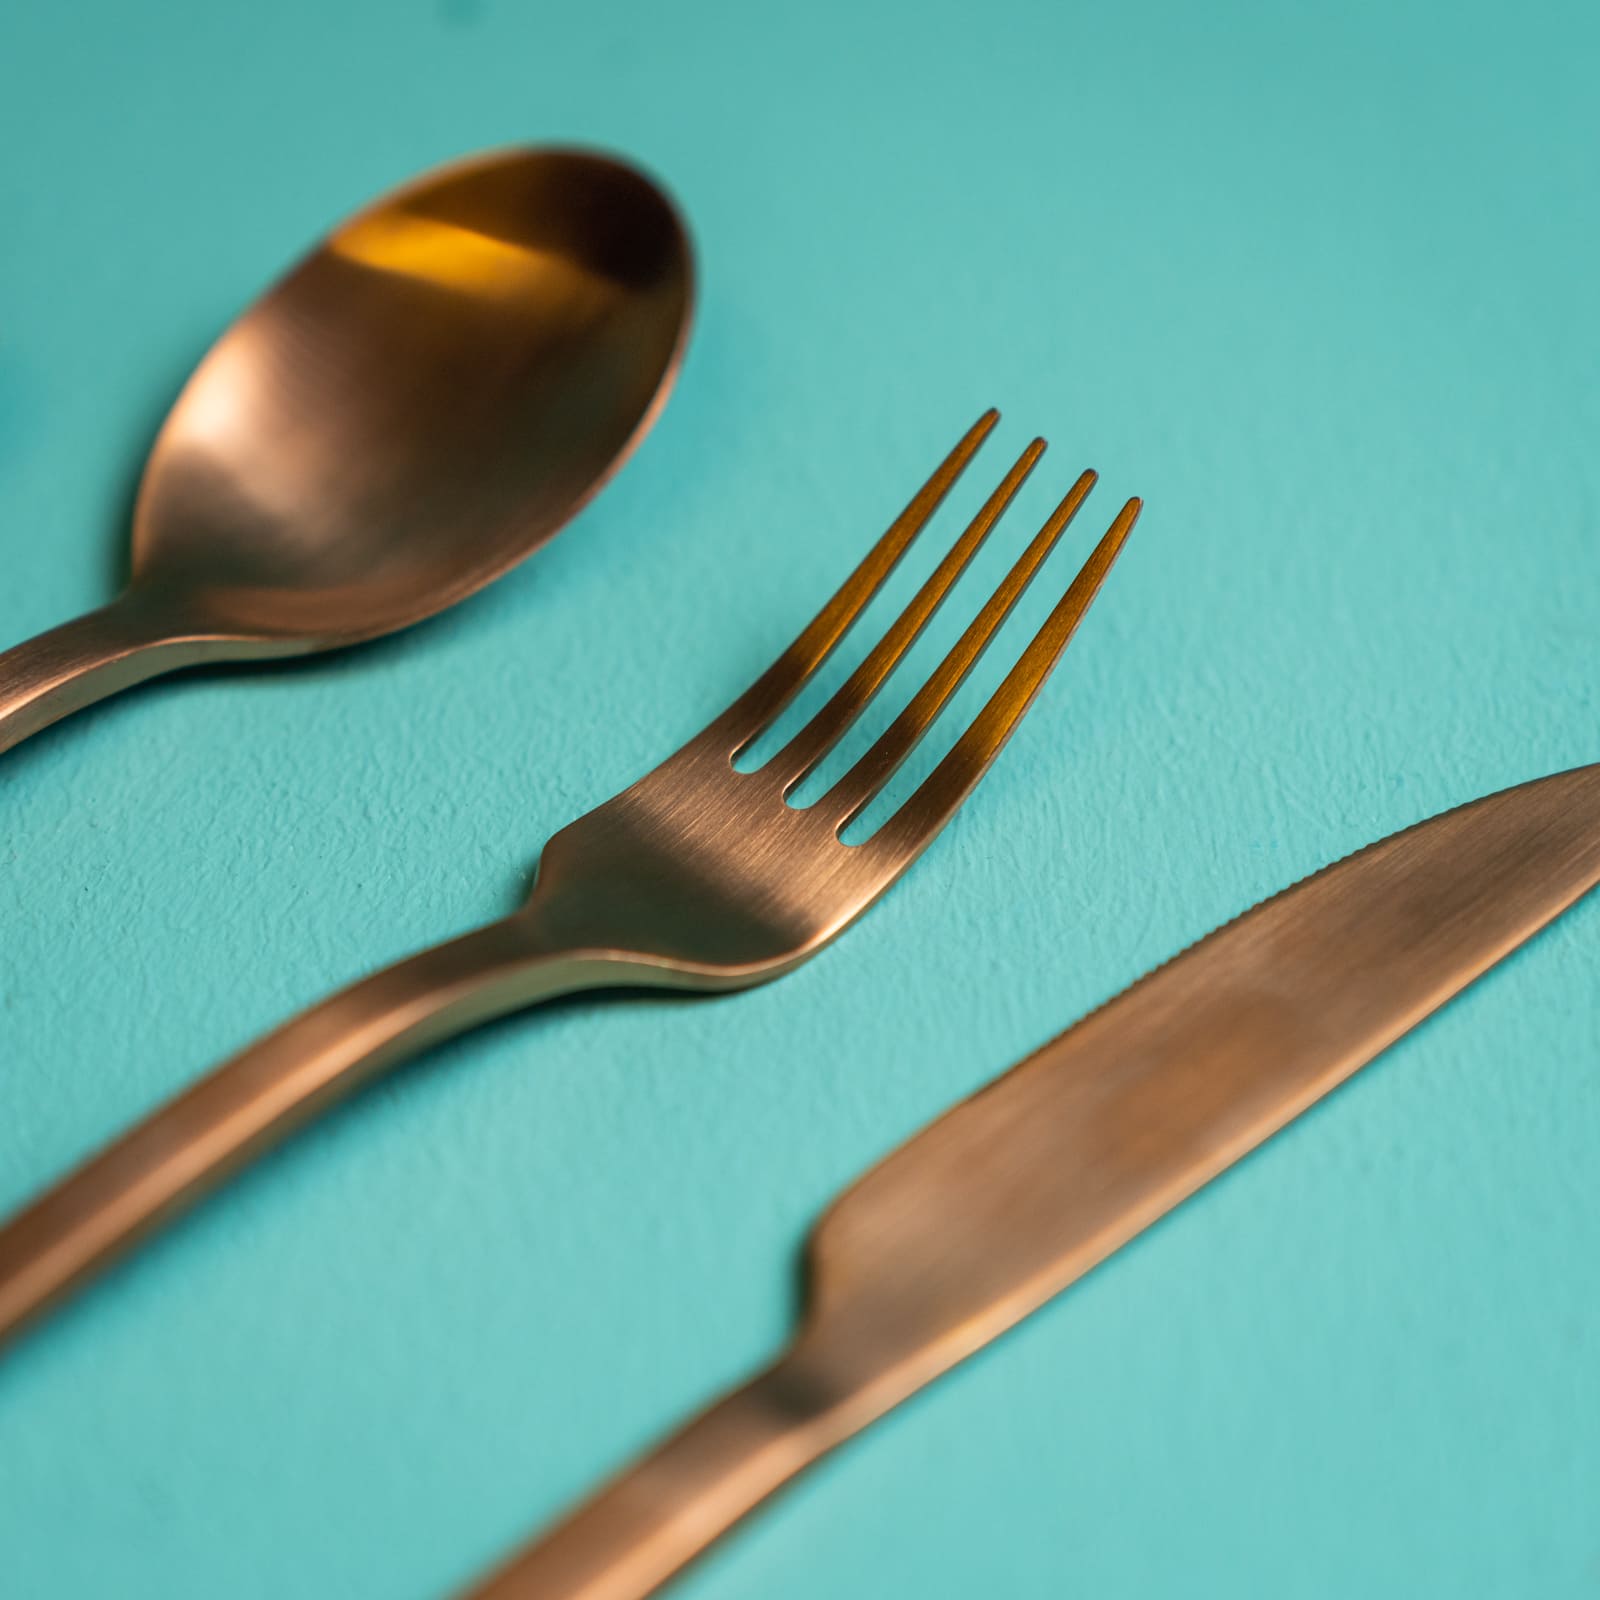 4er Besteckset Cutlery, 25x17x3cm Edelstahl 18/10, Copper kupferfarben